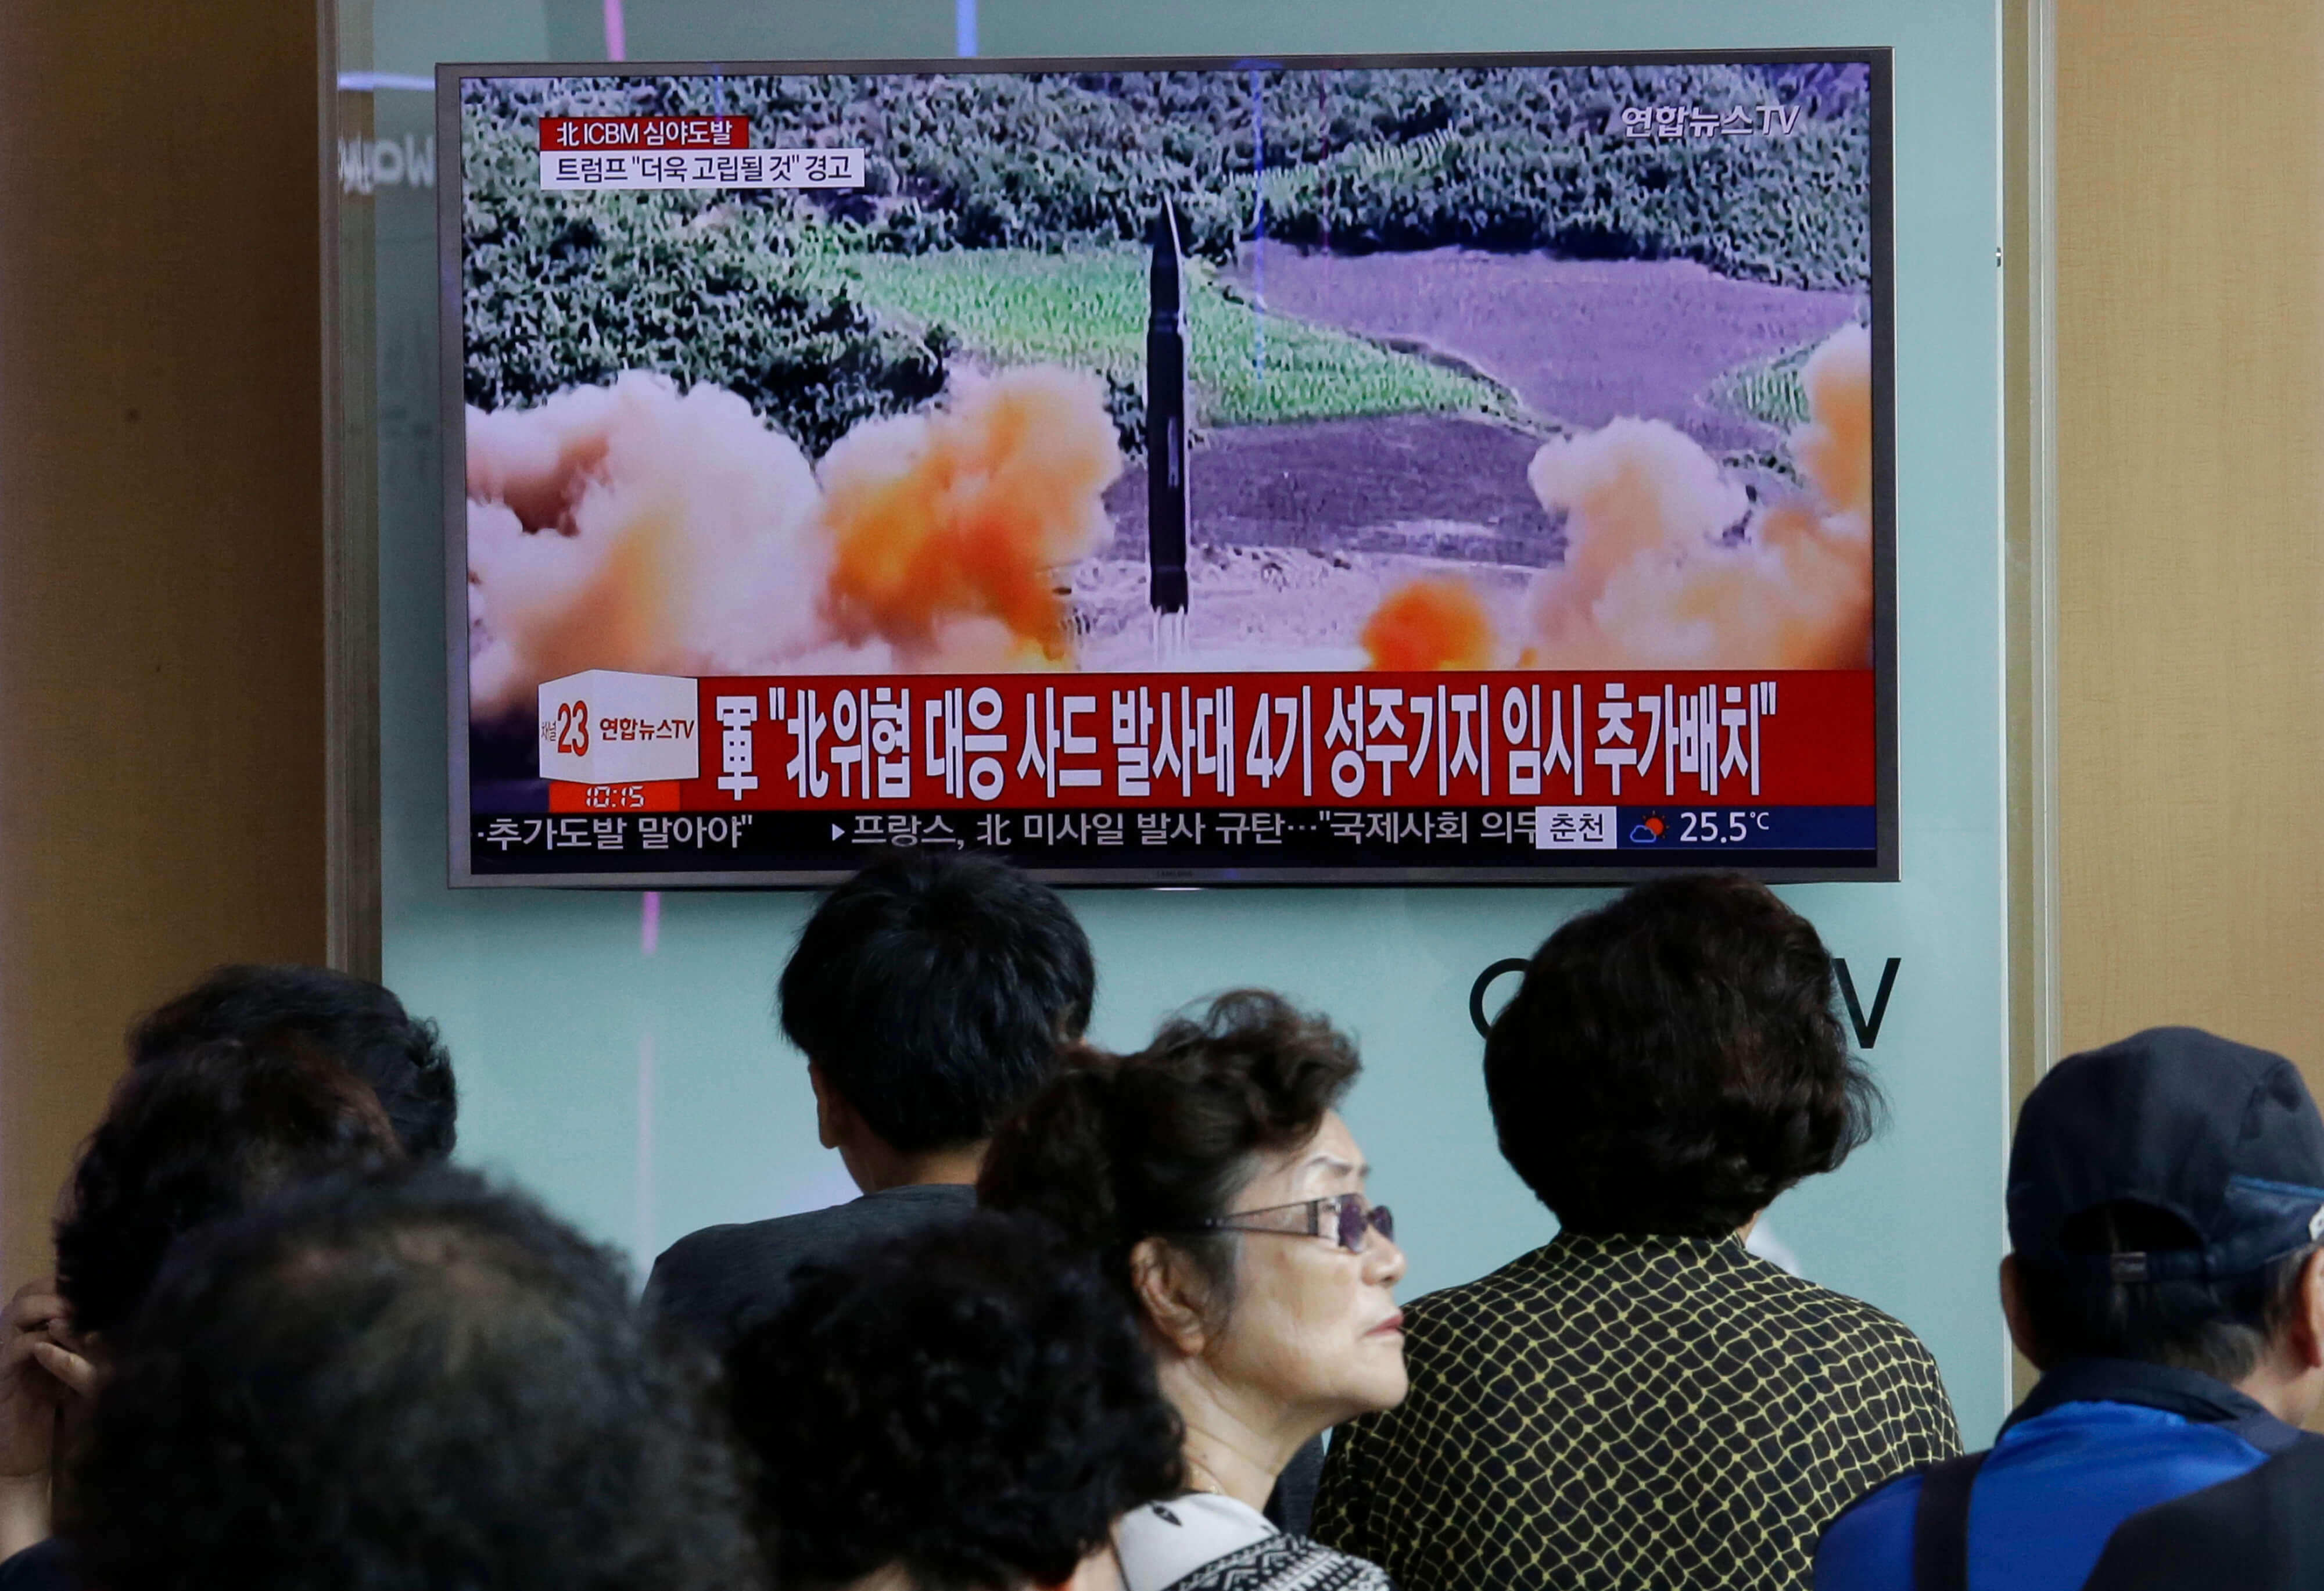 Corea Norte lanzamiento segundo misil intercontinental